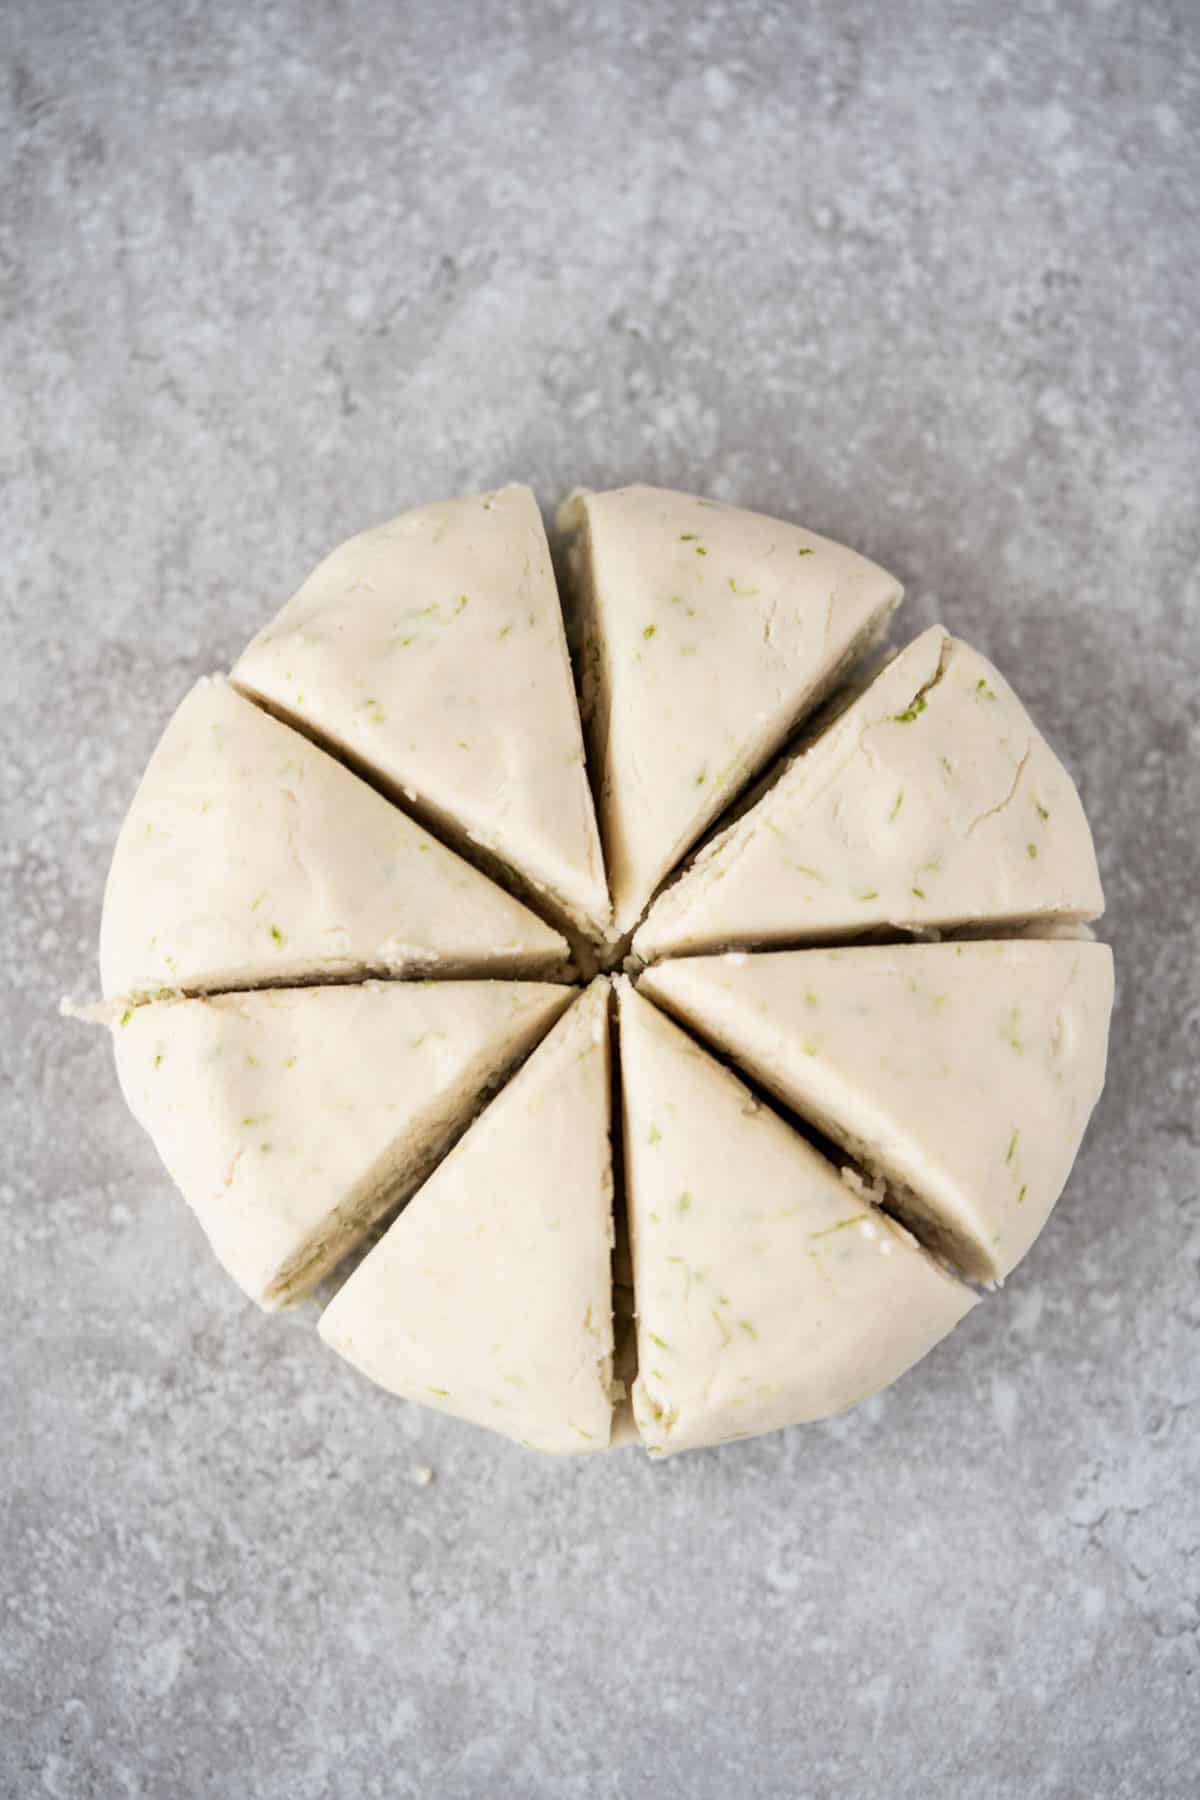 cassava flour tortilla dough cut into 8 equal triangles